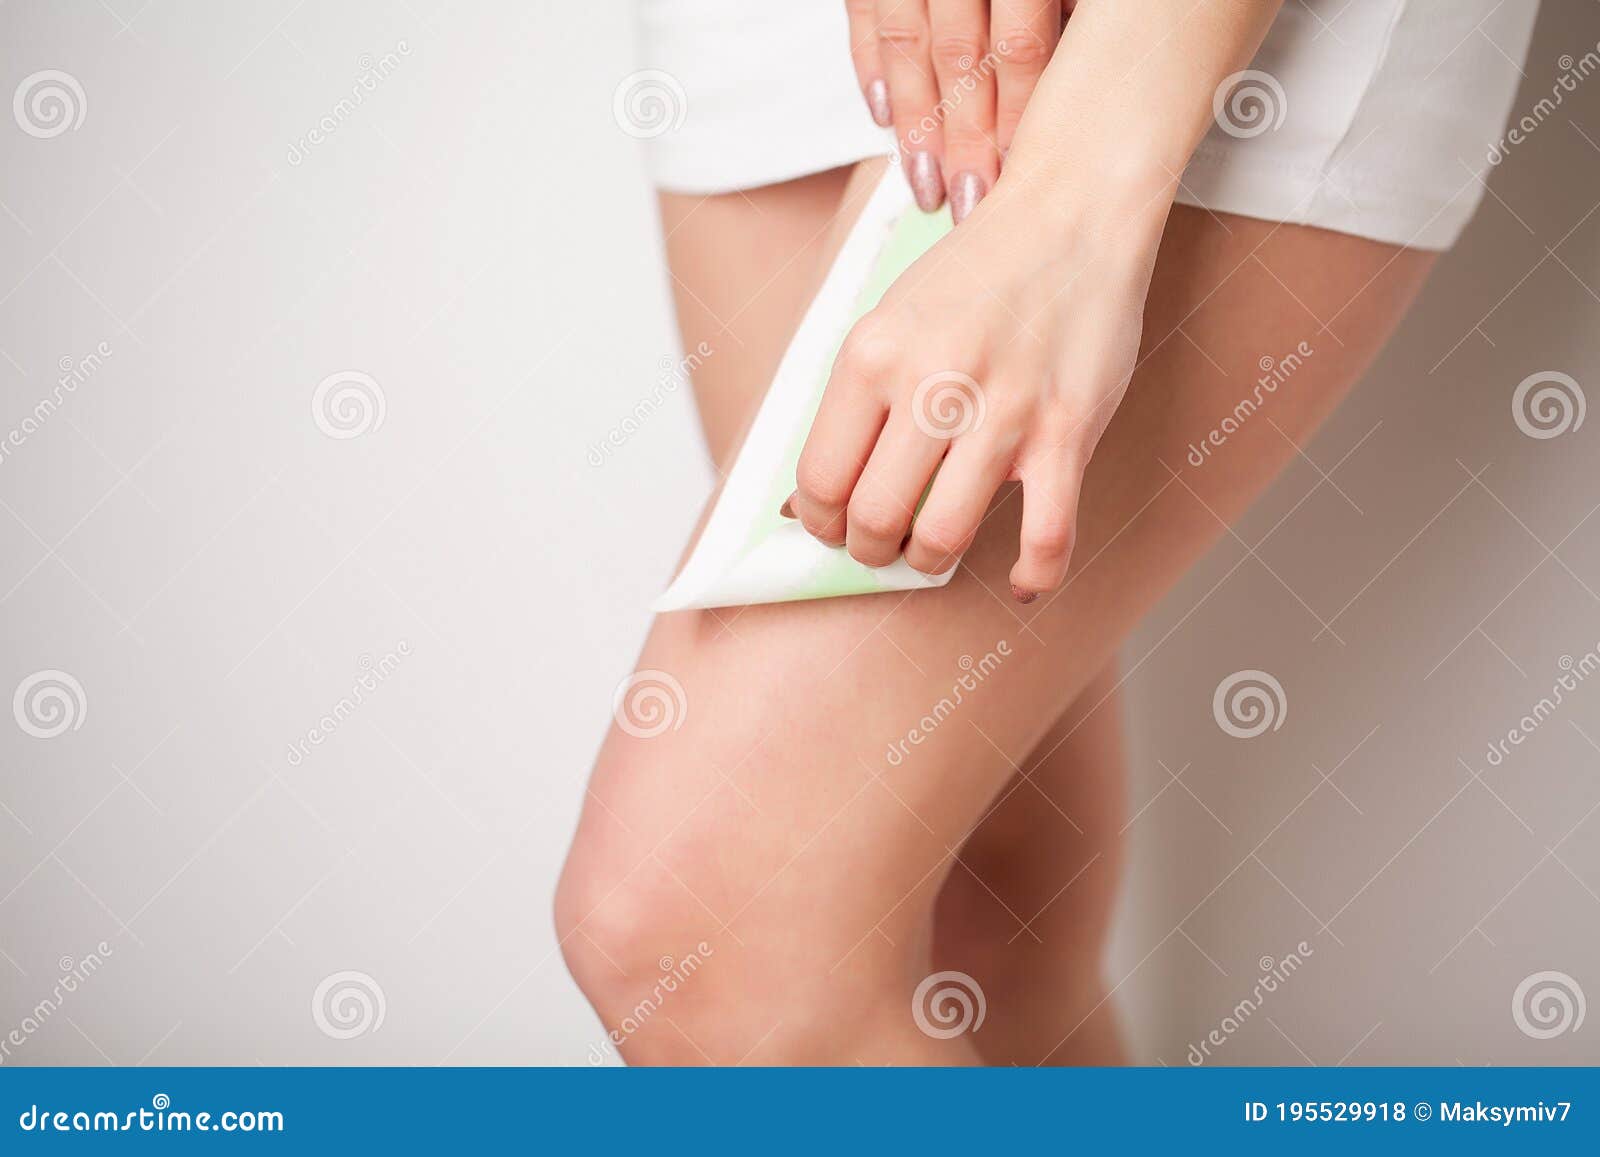 beautician waxing a woman`s leg applying wax strip